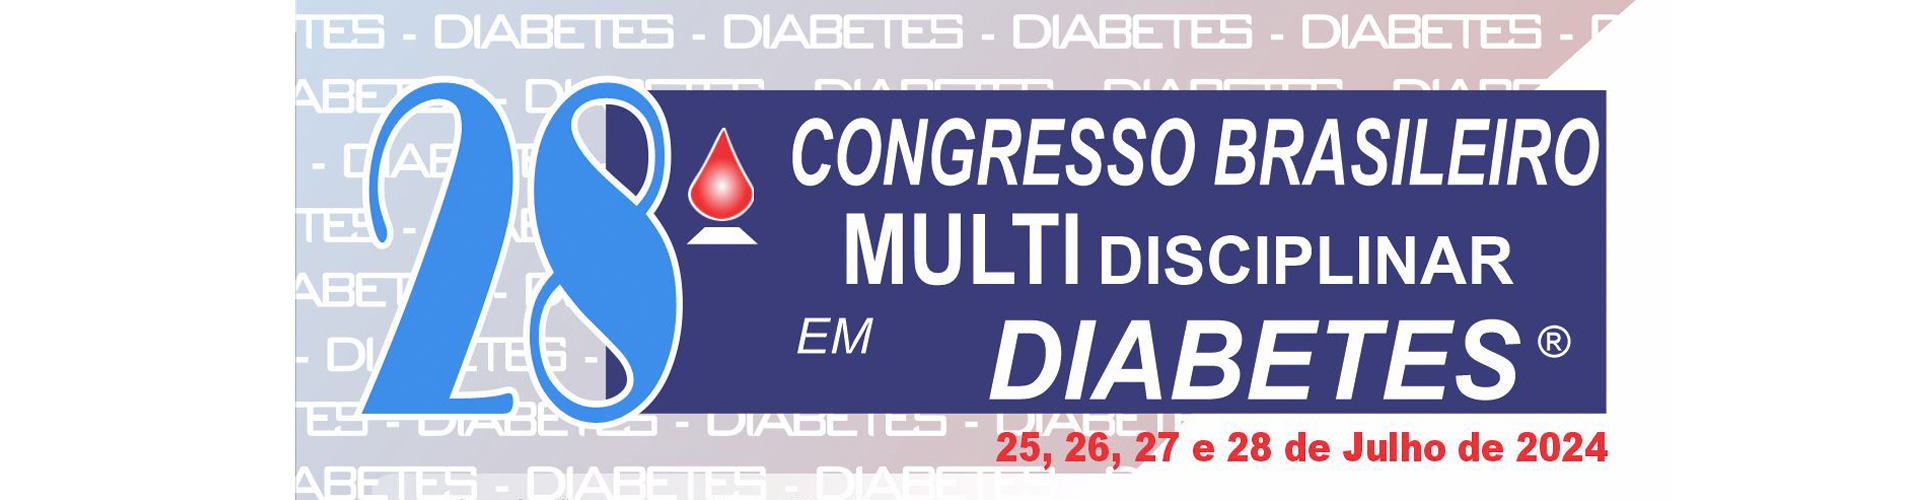 28 Congresso Brasileiro Multidisciplinar de Diabetes